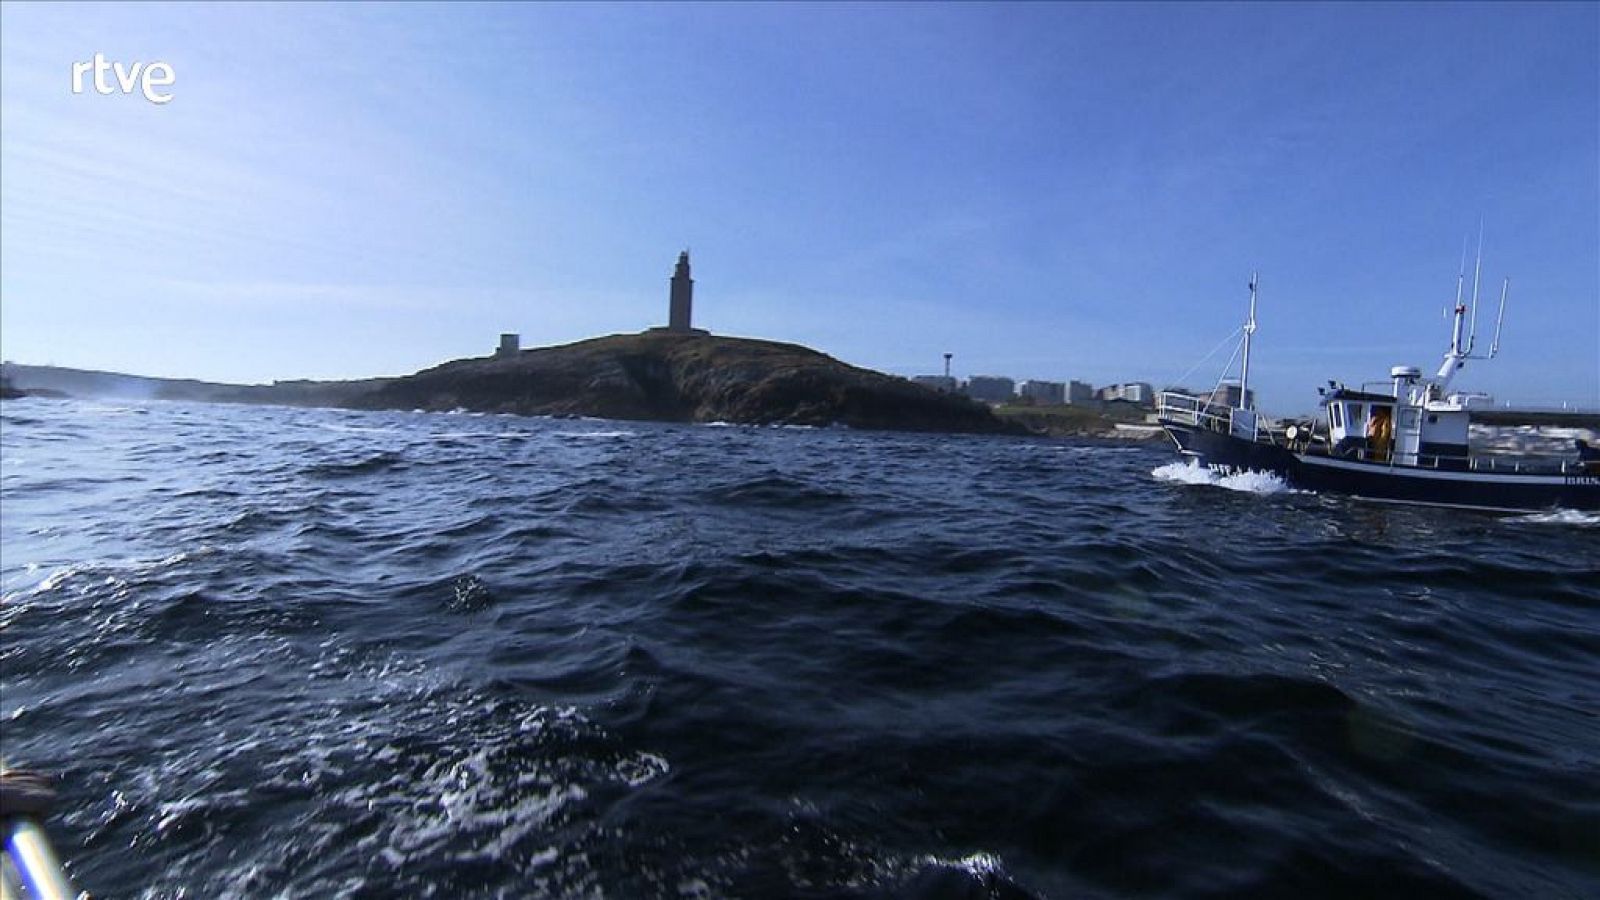  La torre de Hércules, en La Coruña - avance